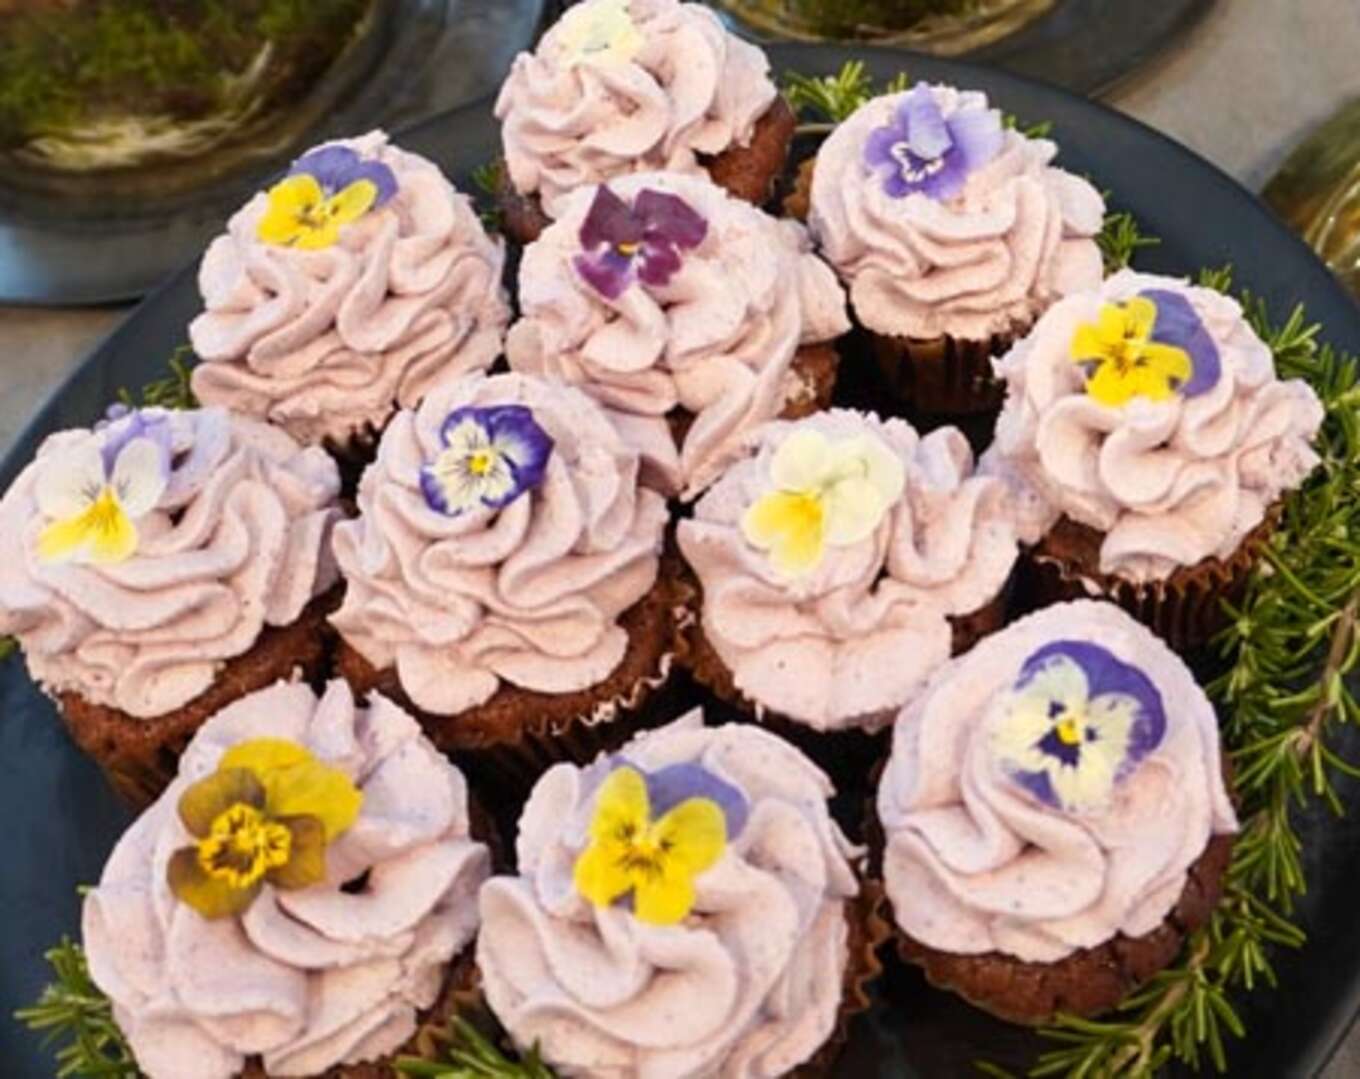 春のブーケの様なプチケーキ頭の上には食べられる花をちょこんと乗せて